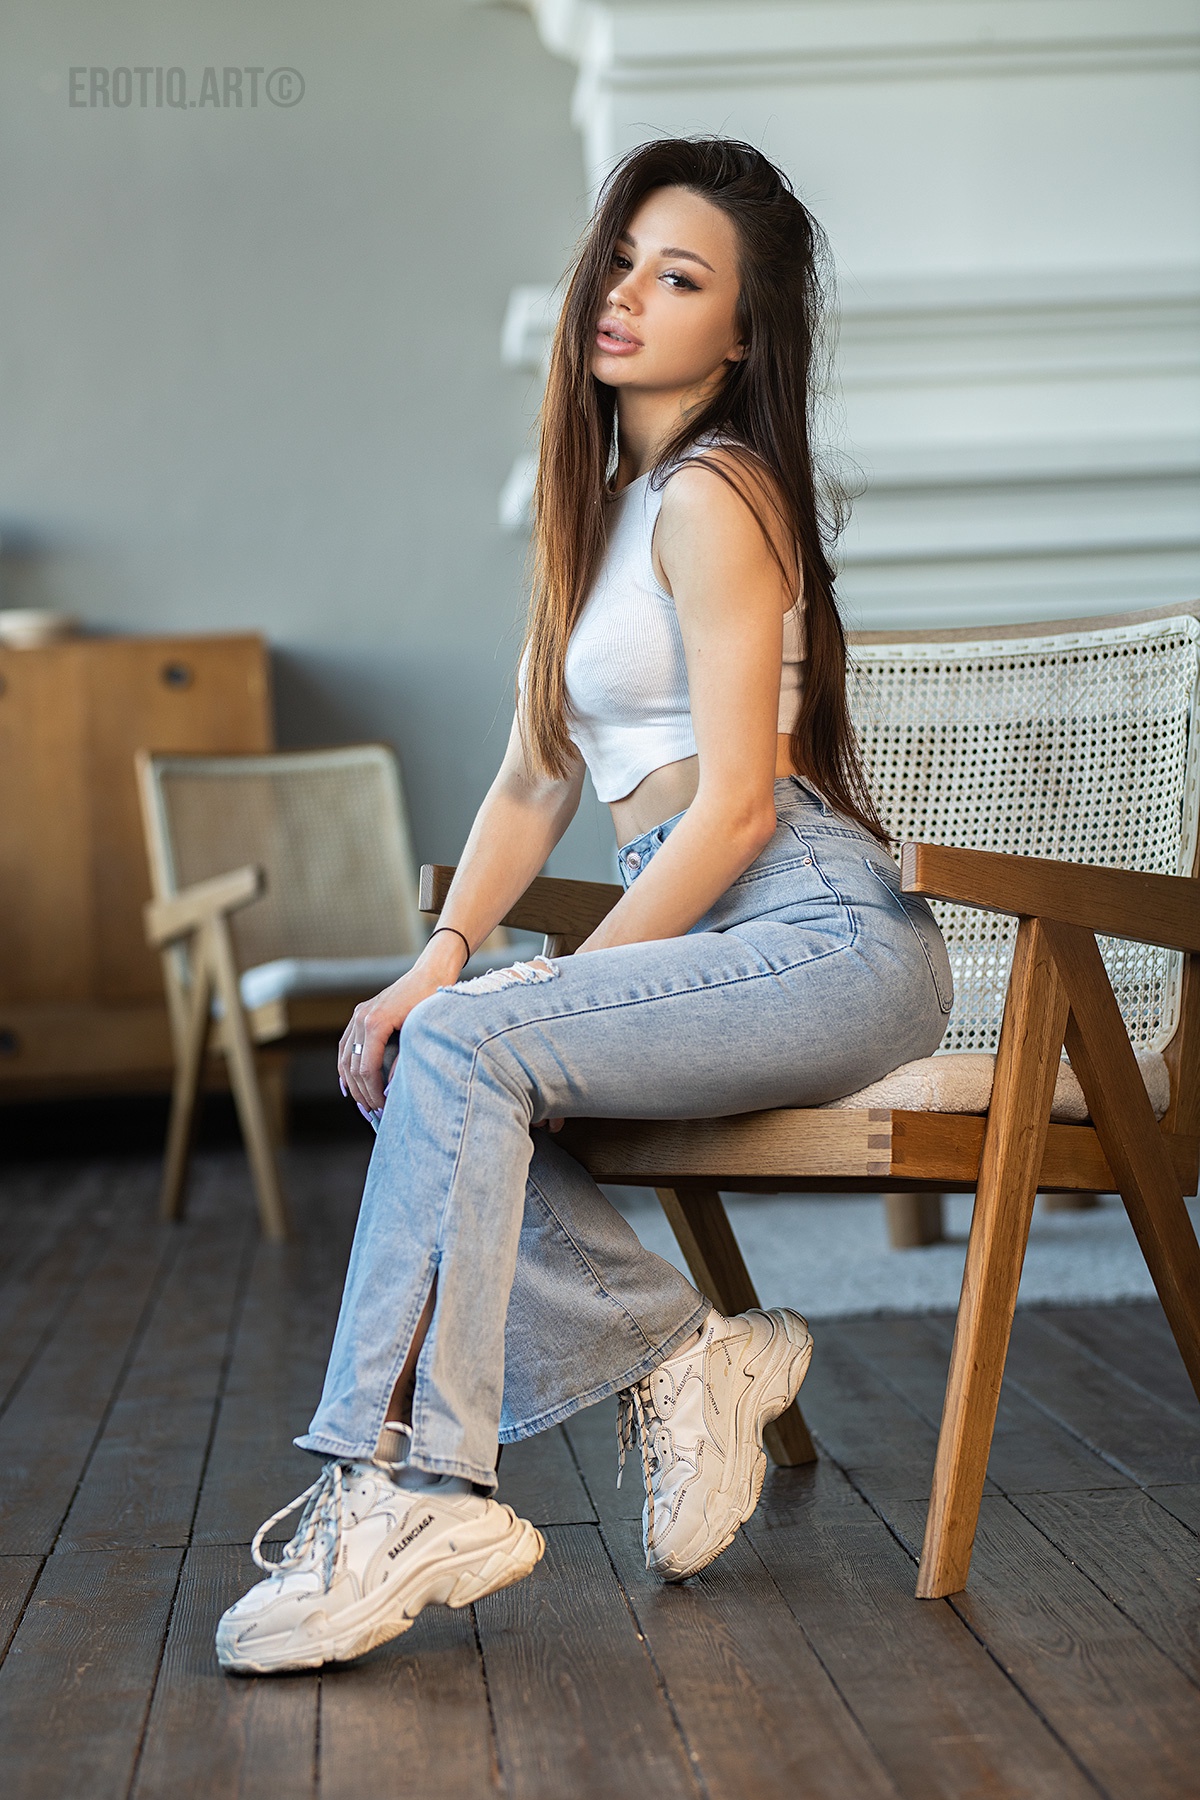 Aleksandr Margolin Women Brunette Long Hair Tank Top Jeans Sneakers Chair 1200x1800